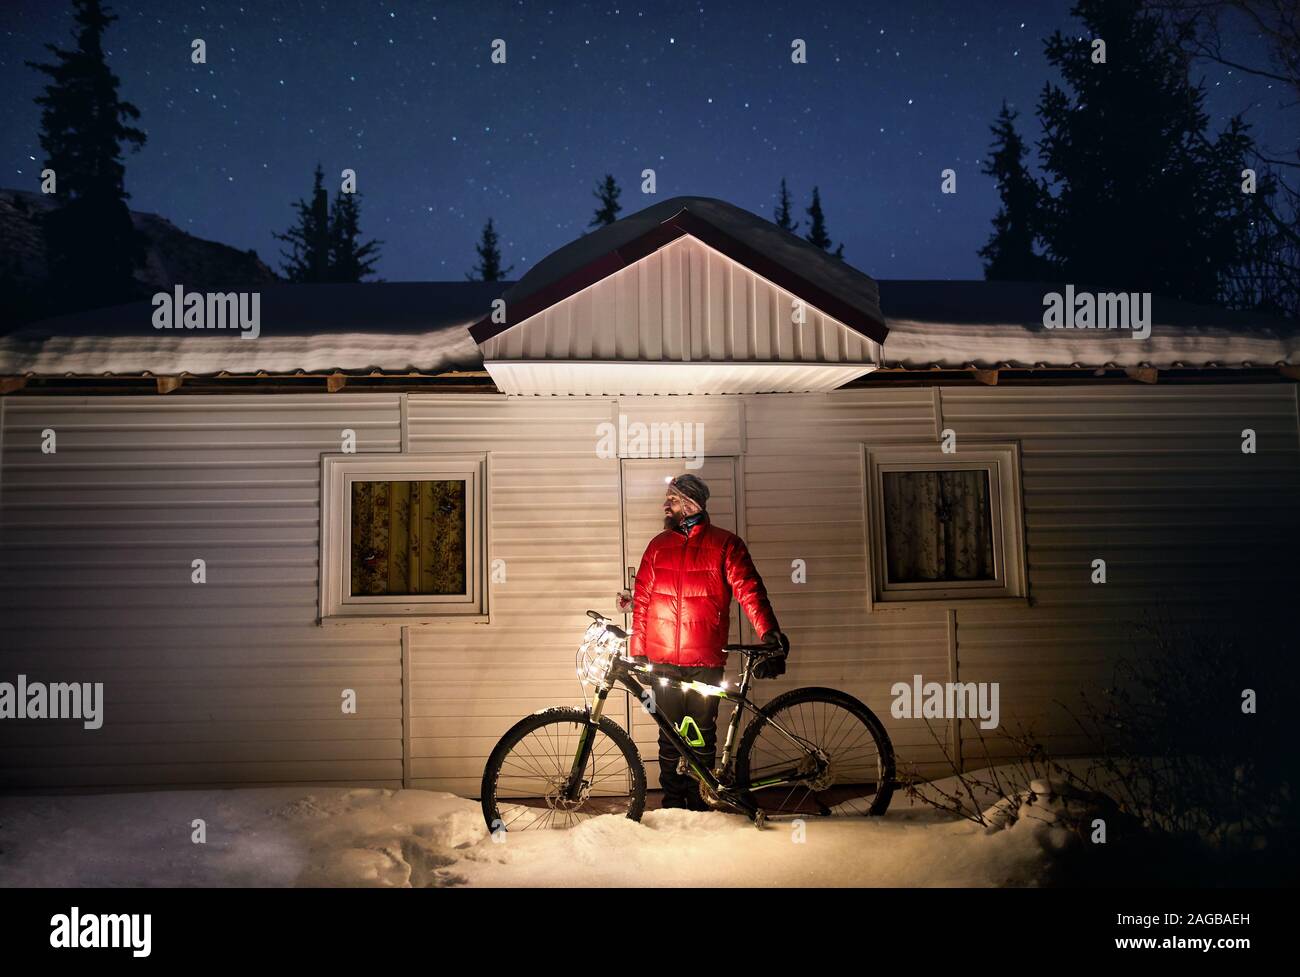 Mann im roten Mantel mit Fahrrad mit Weihnachtsbeleuchtung in der Nähe von kleines Haus im Winter verschneite Wald in die Berge unter dem Nachthimmel mit Sternen Stockfoto